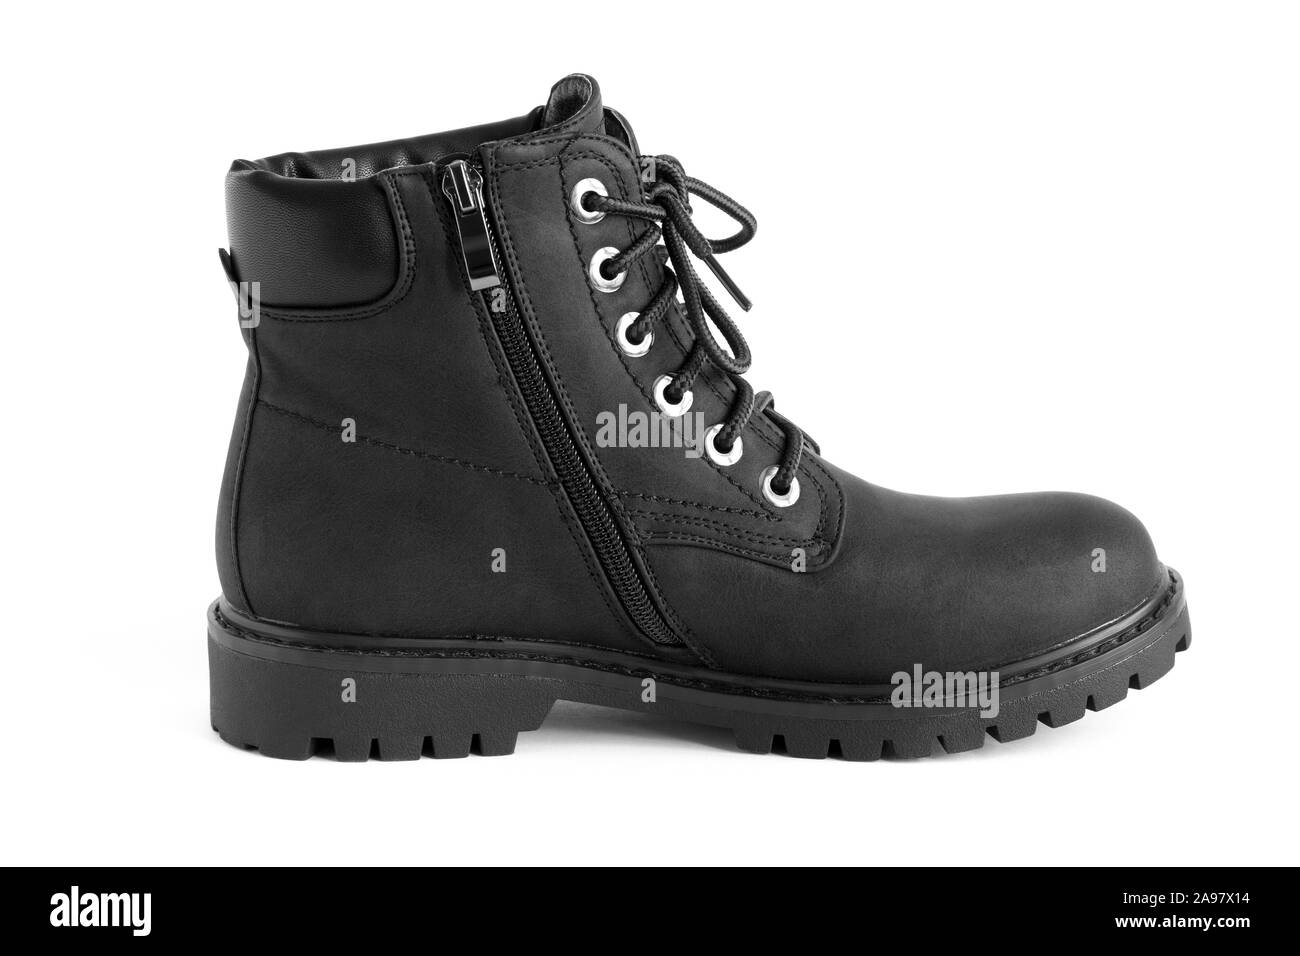 Heavy Duty Negro botas unisex aislado sobre fondo blanco, zapatos para el otoño invierno Foto de stock